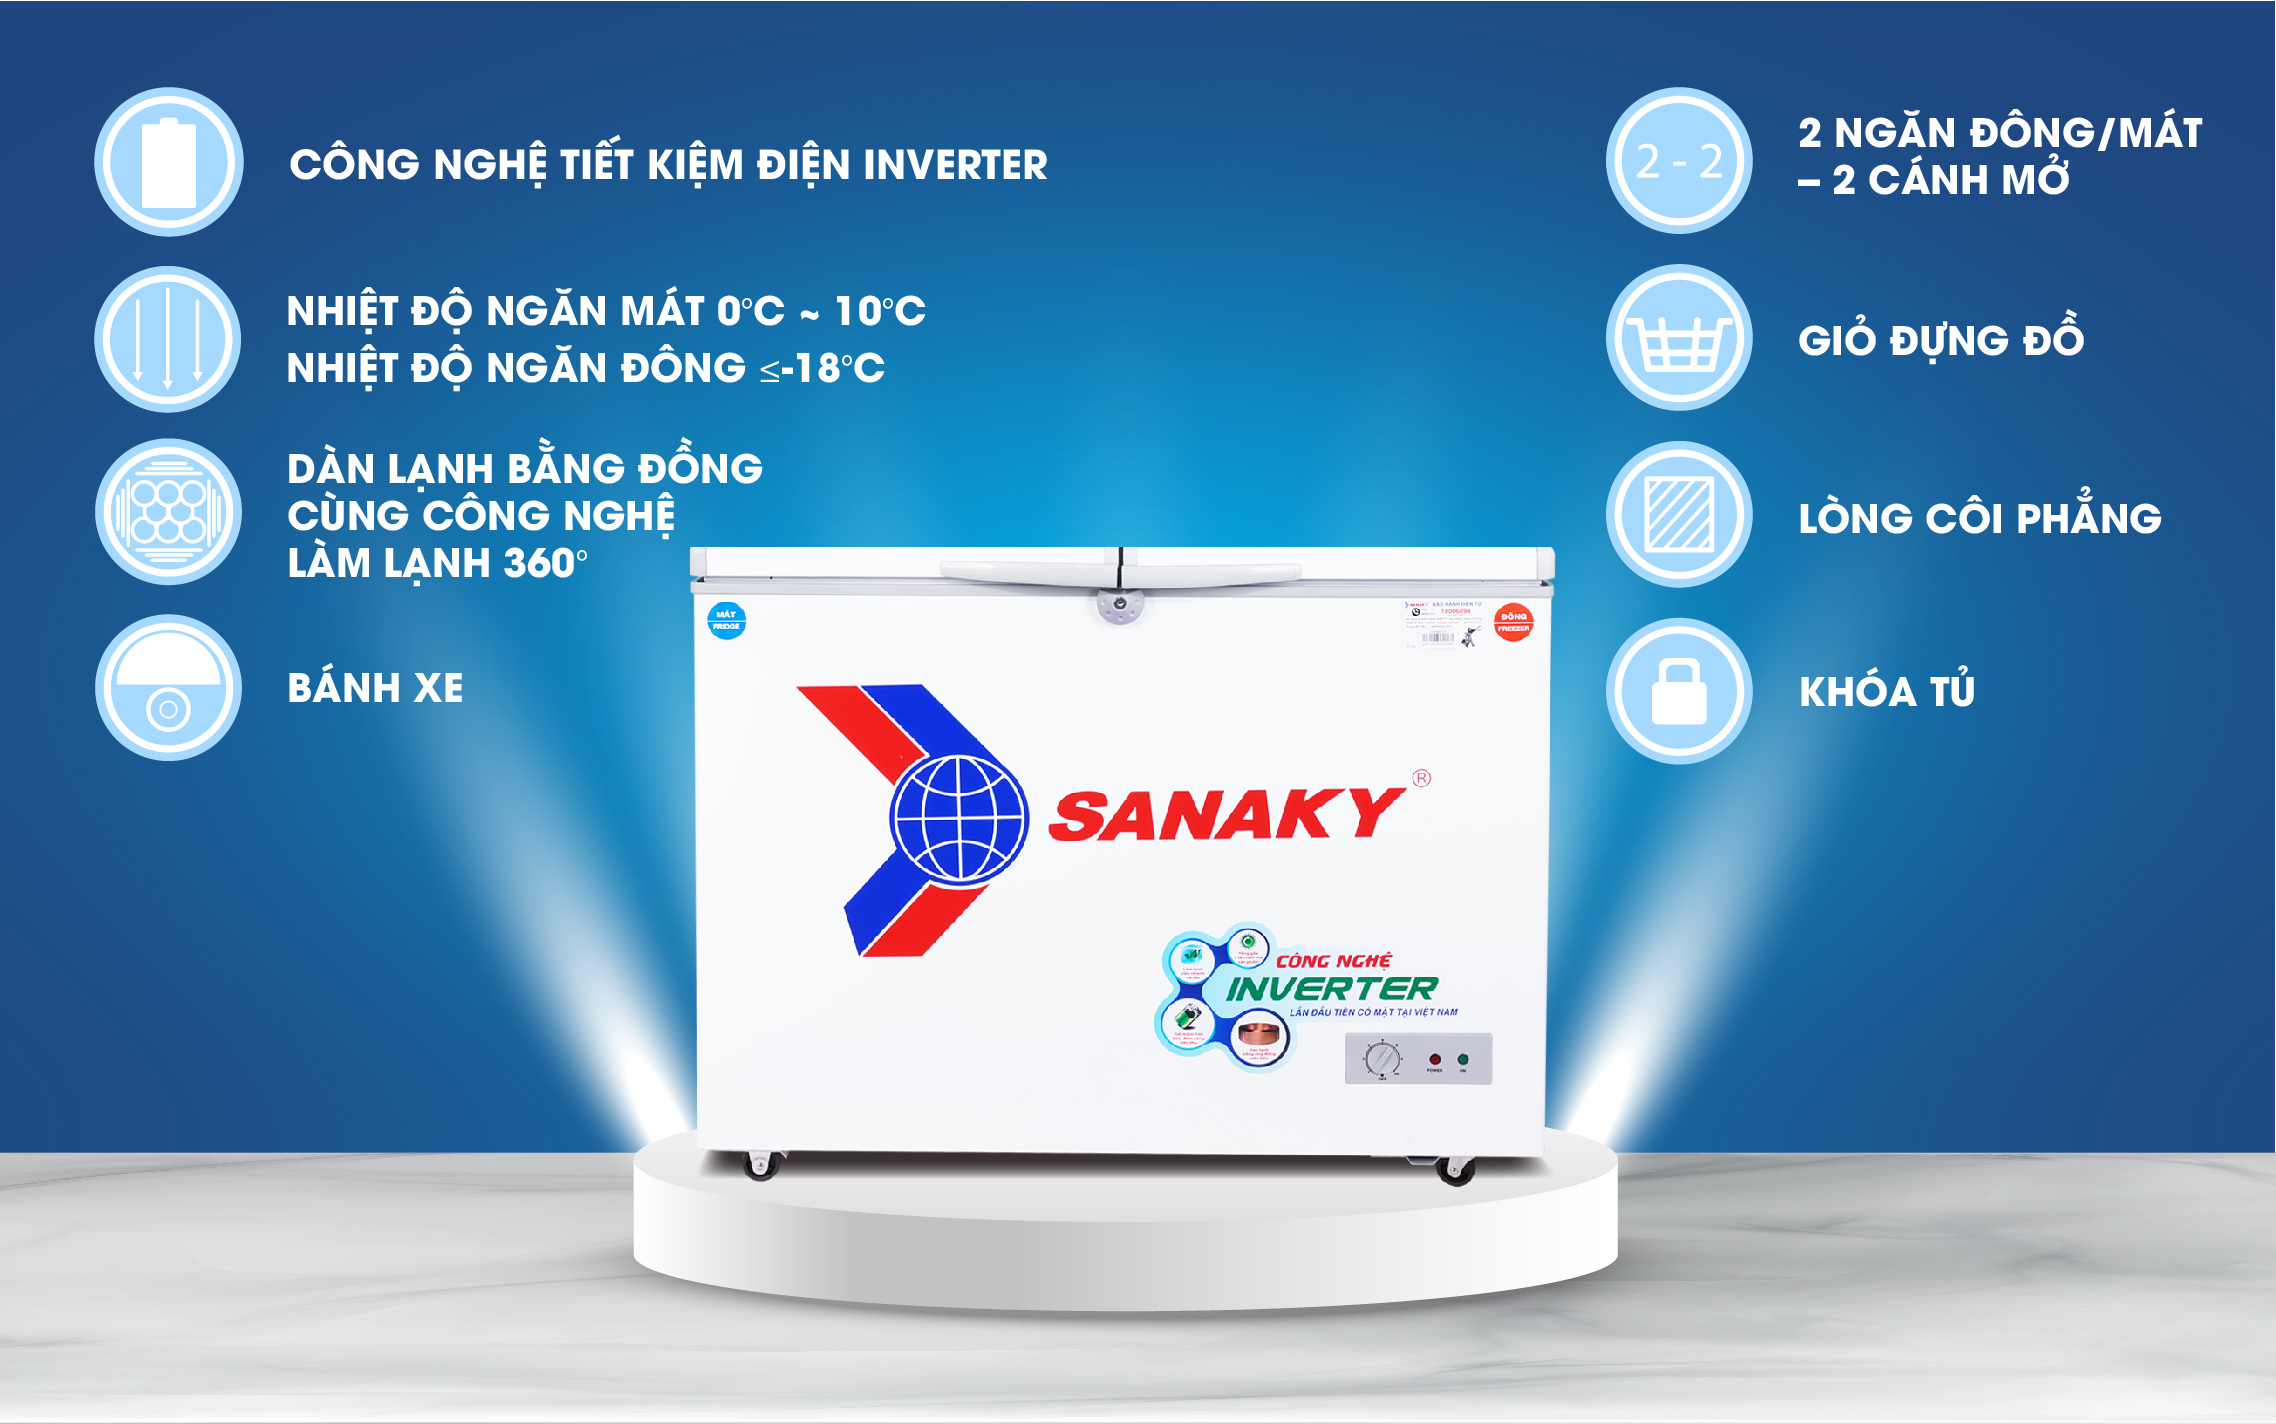 Tủ Đông Sanaky VH-2599W3